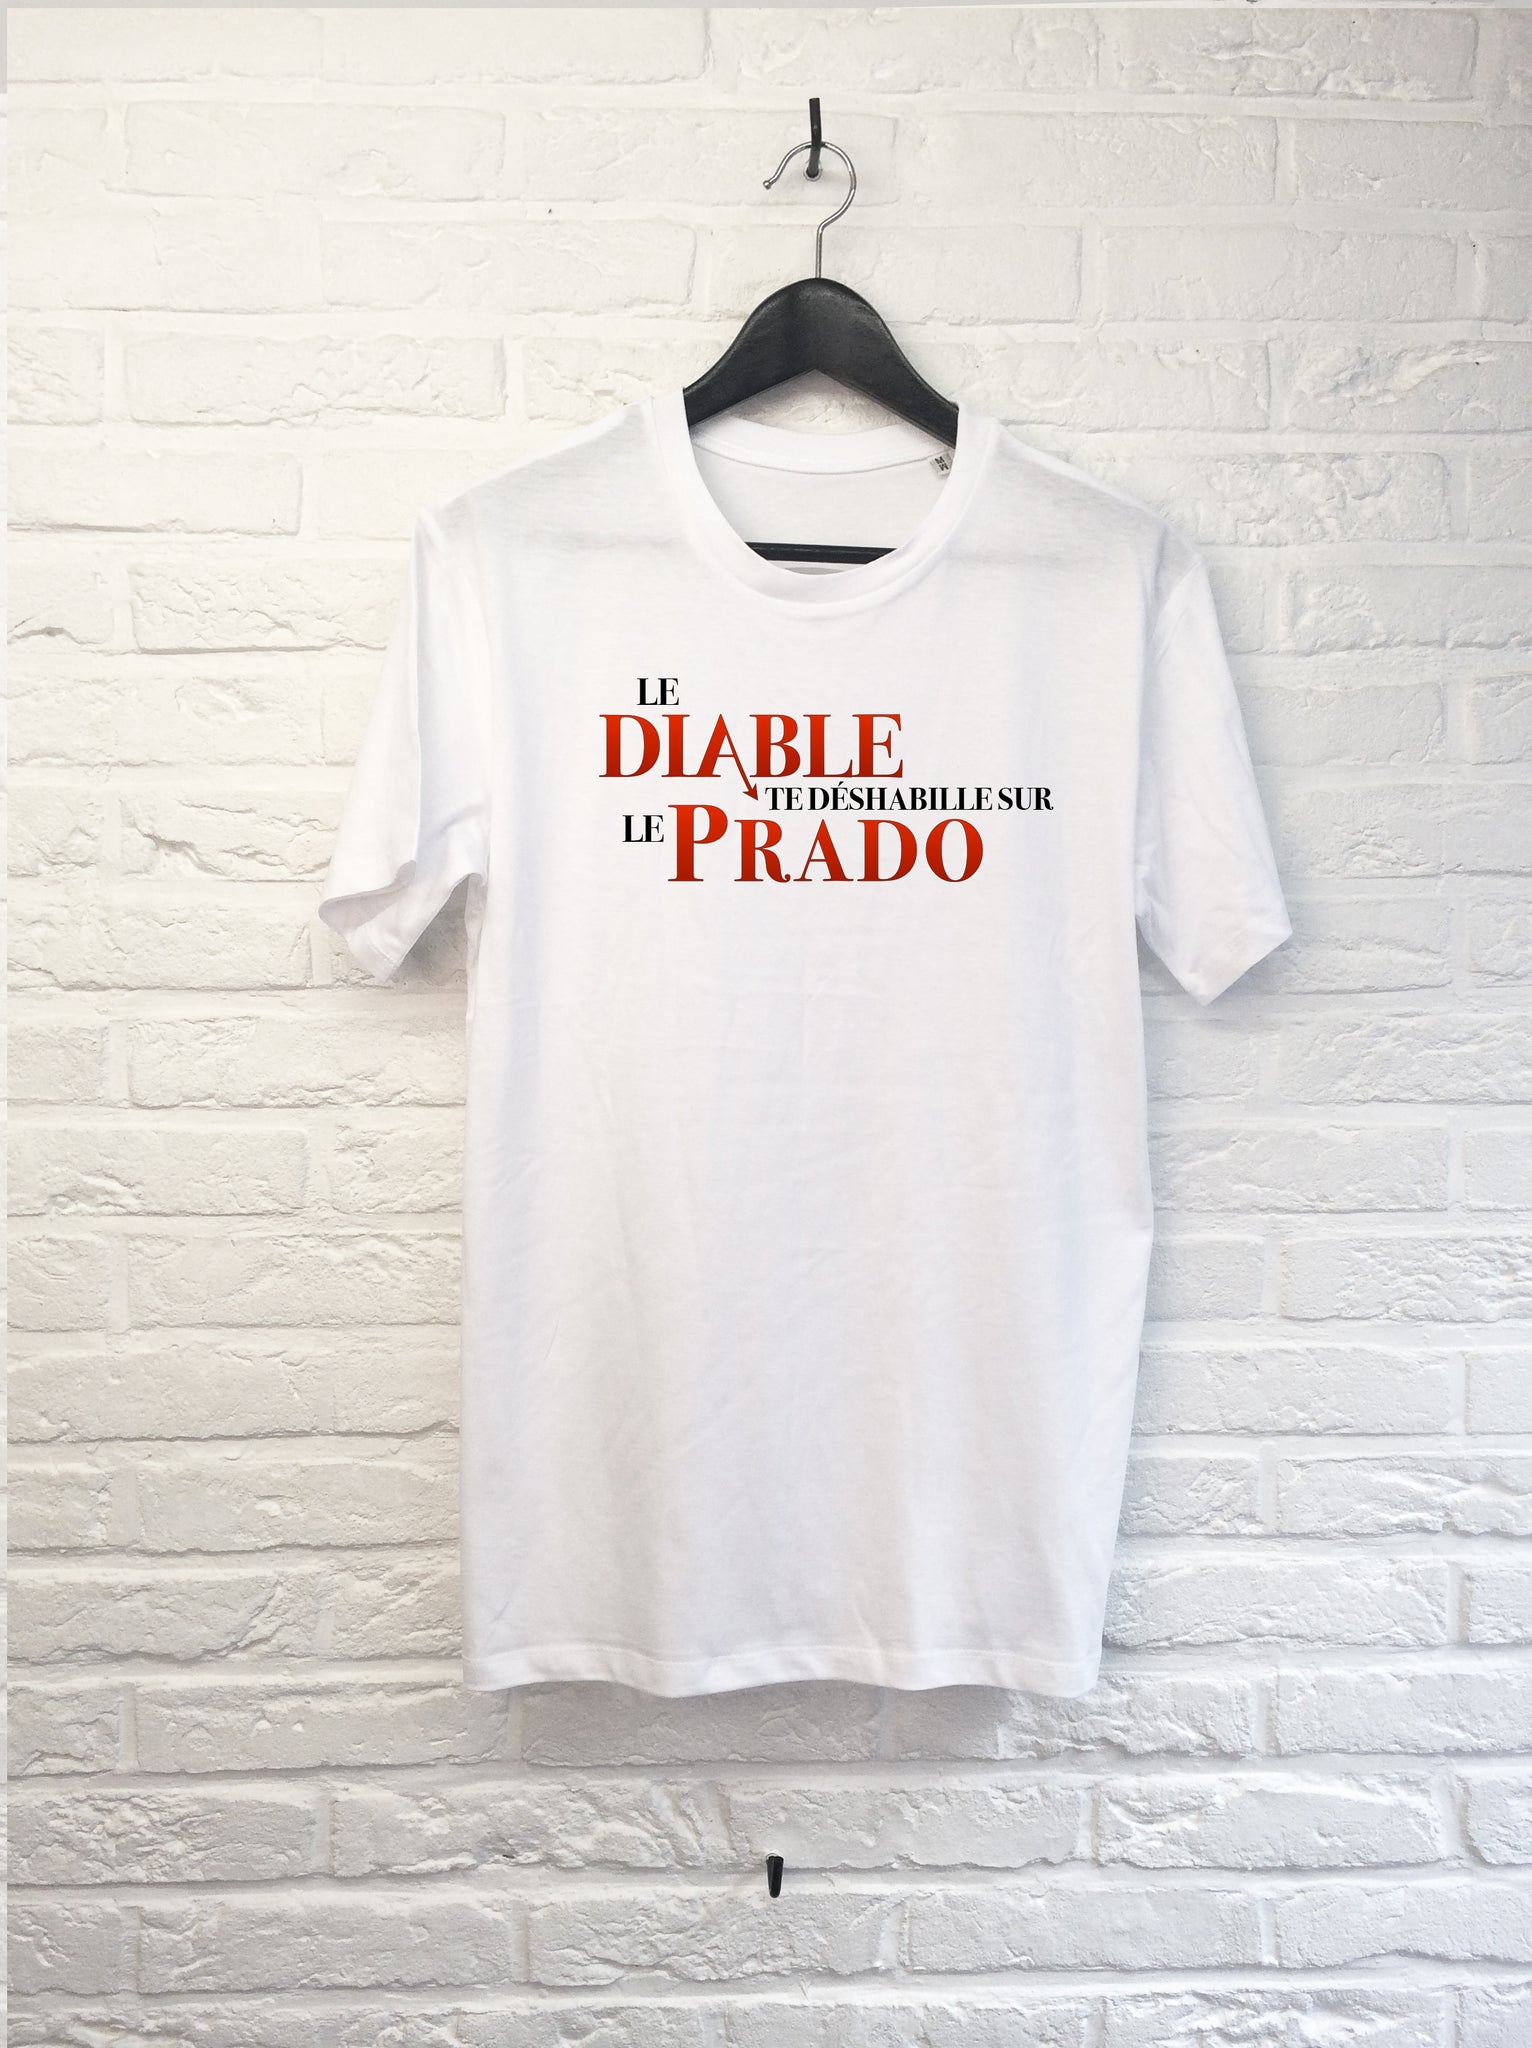 Le diable te deshabille sur le Prado-T shirt-Atelier Amelot